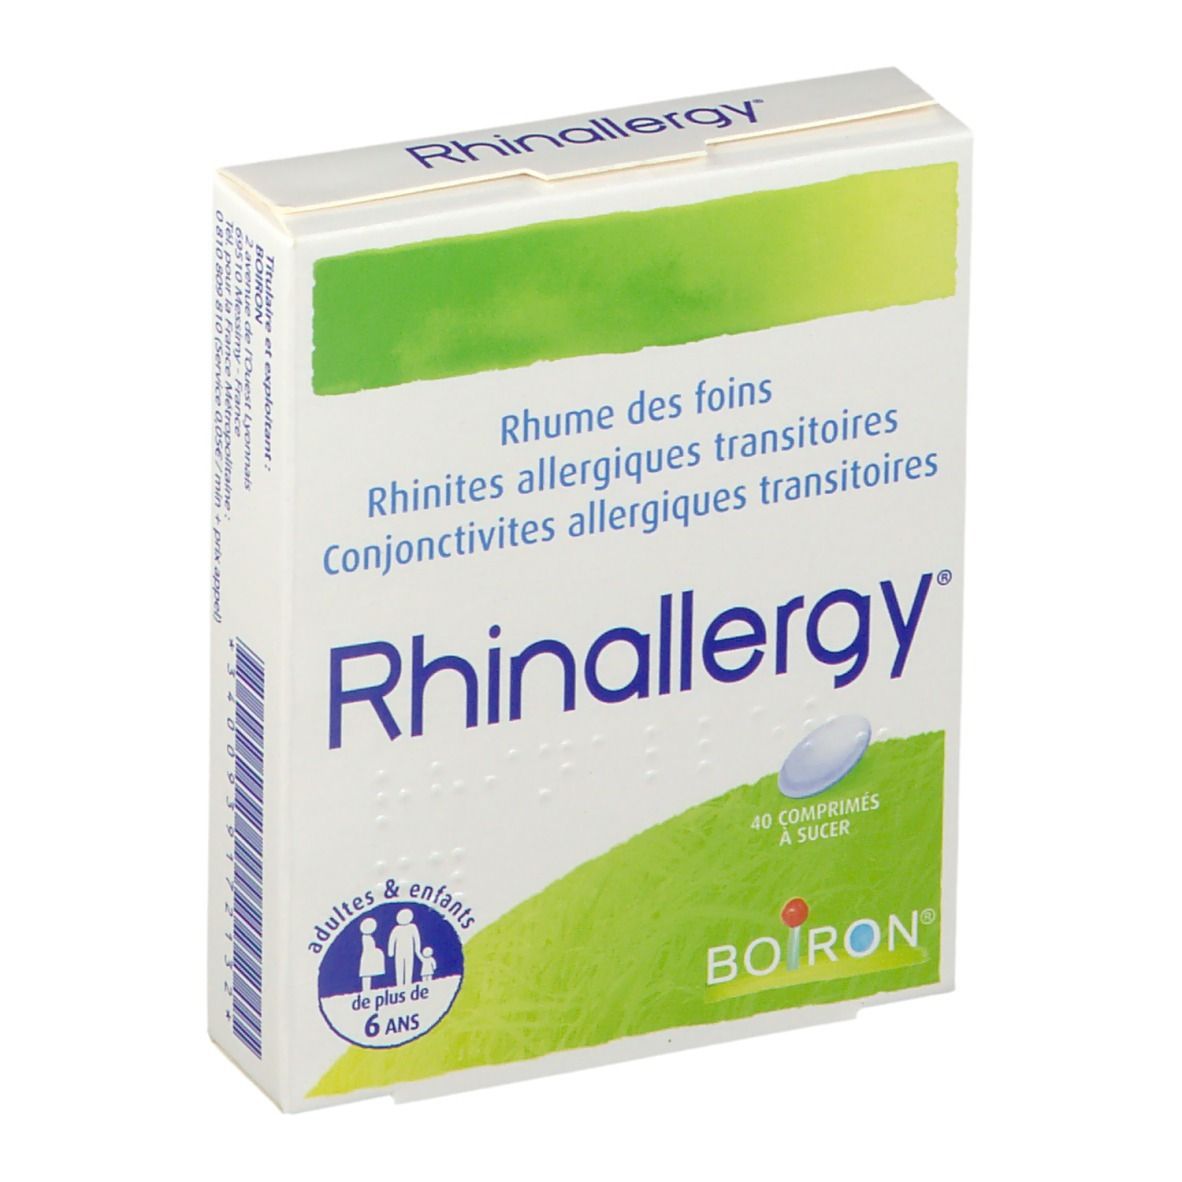 Boiron Rhinallergy®